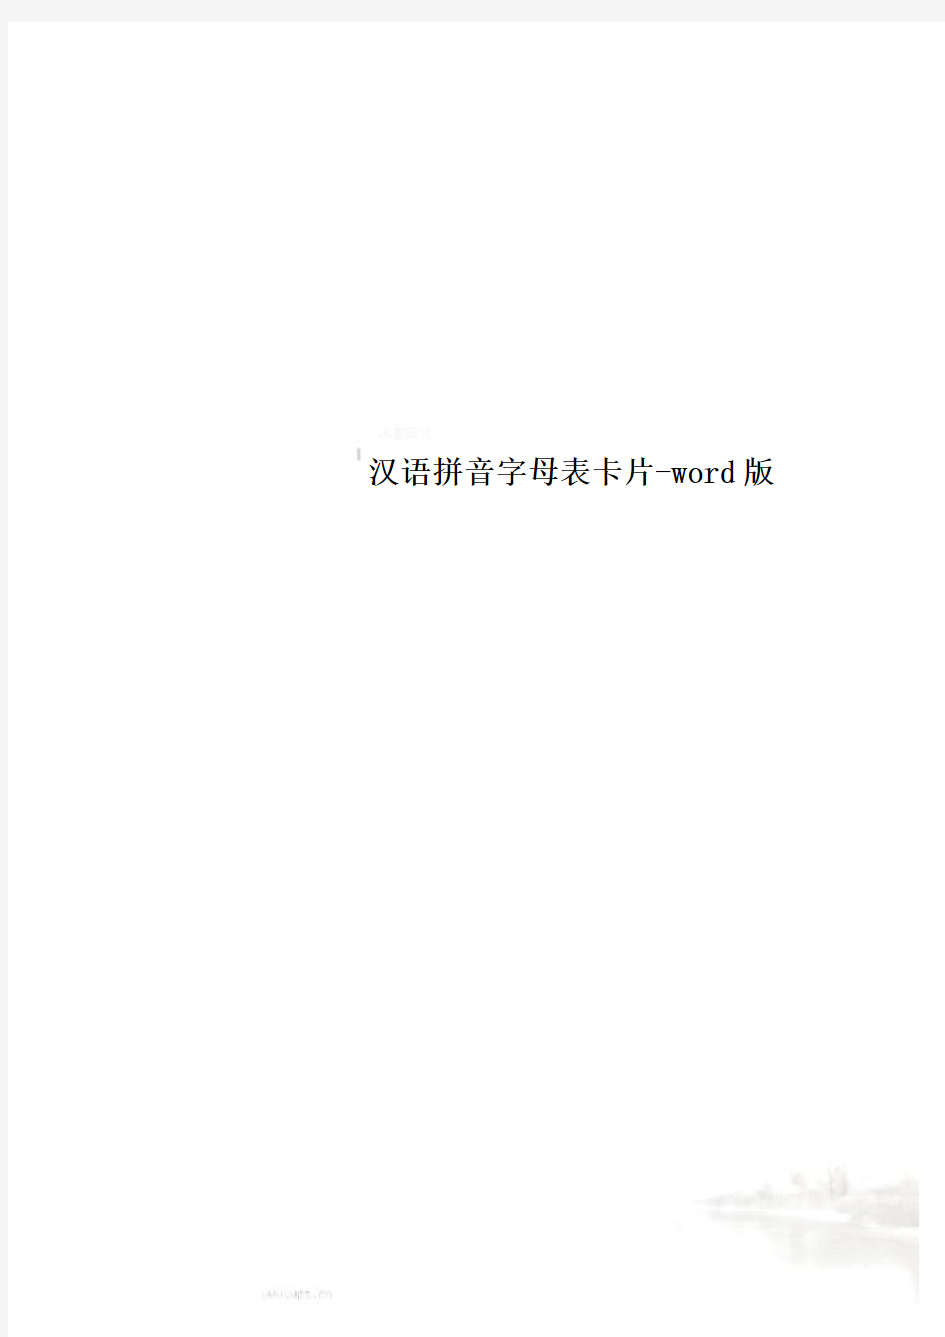 汉语拼音字母表卡片-word版